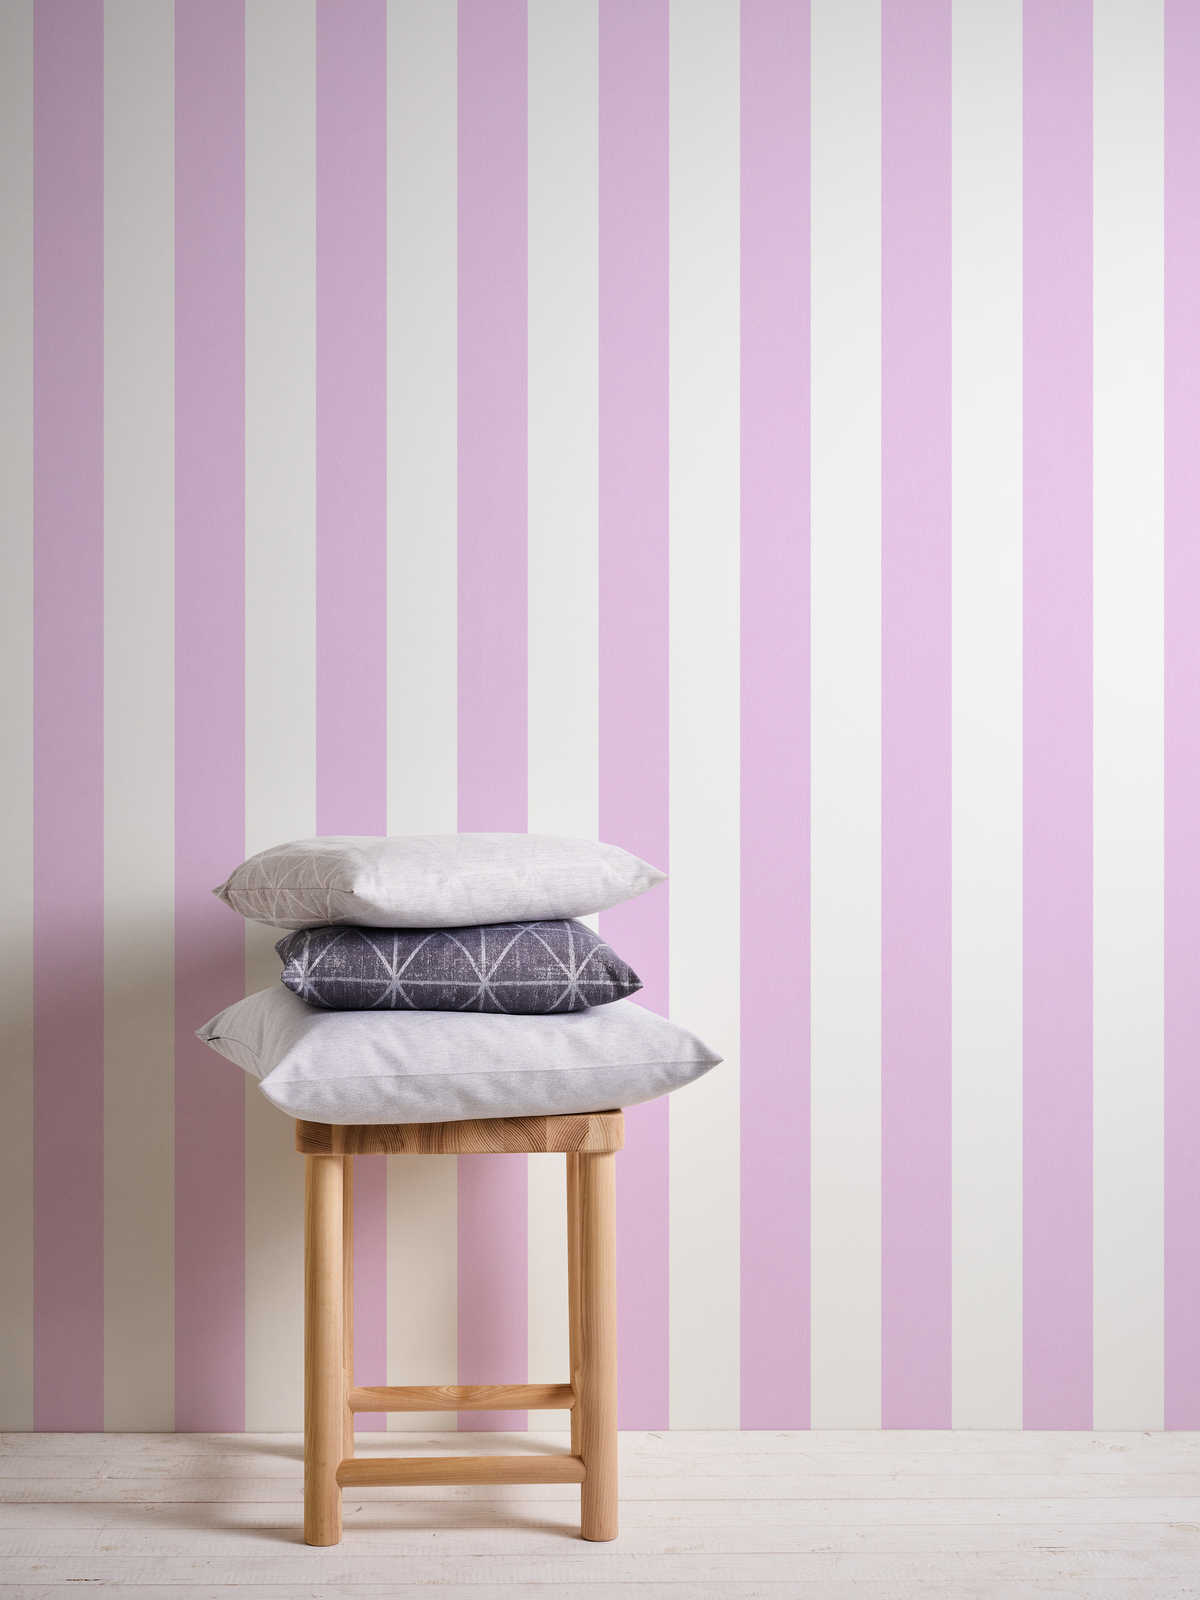             Wallpaper nursery girl vertical stripes - pink, white
        